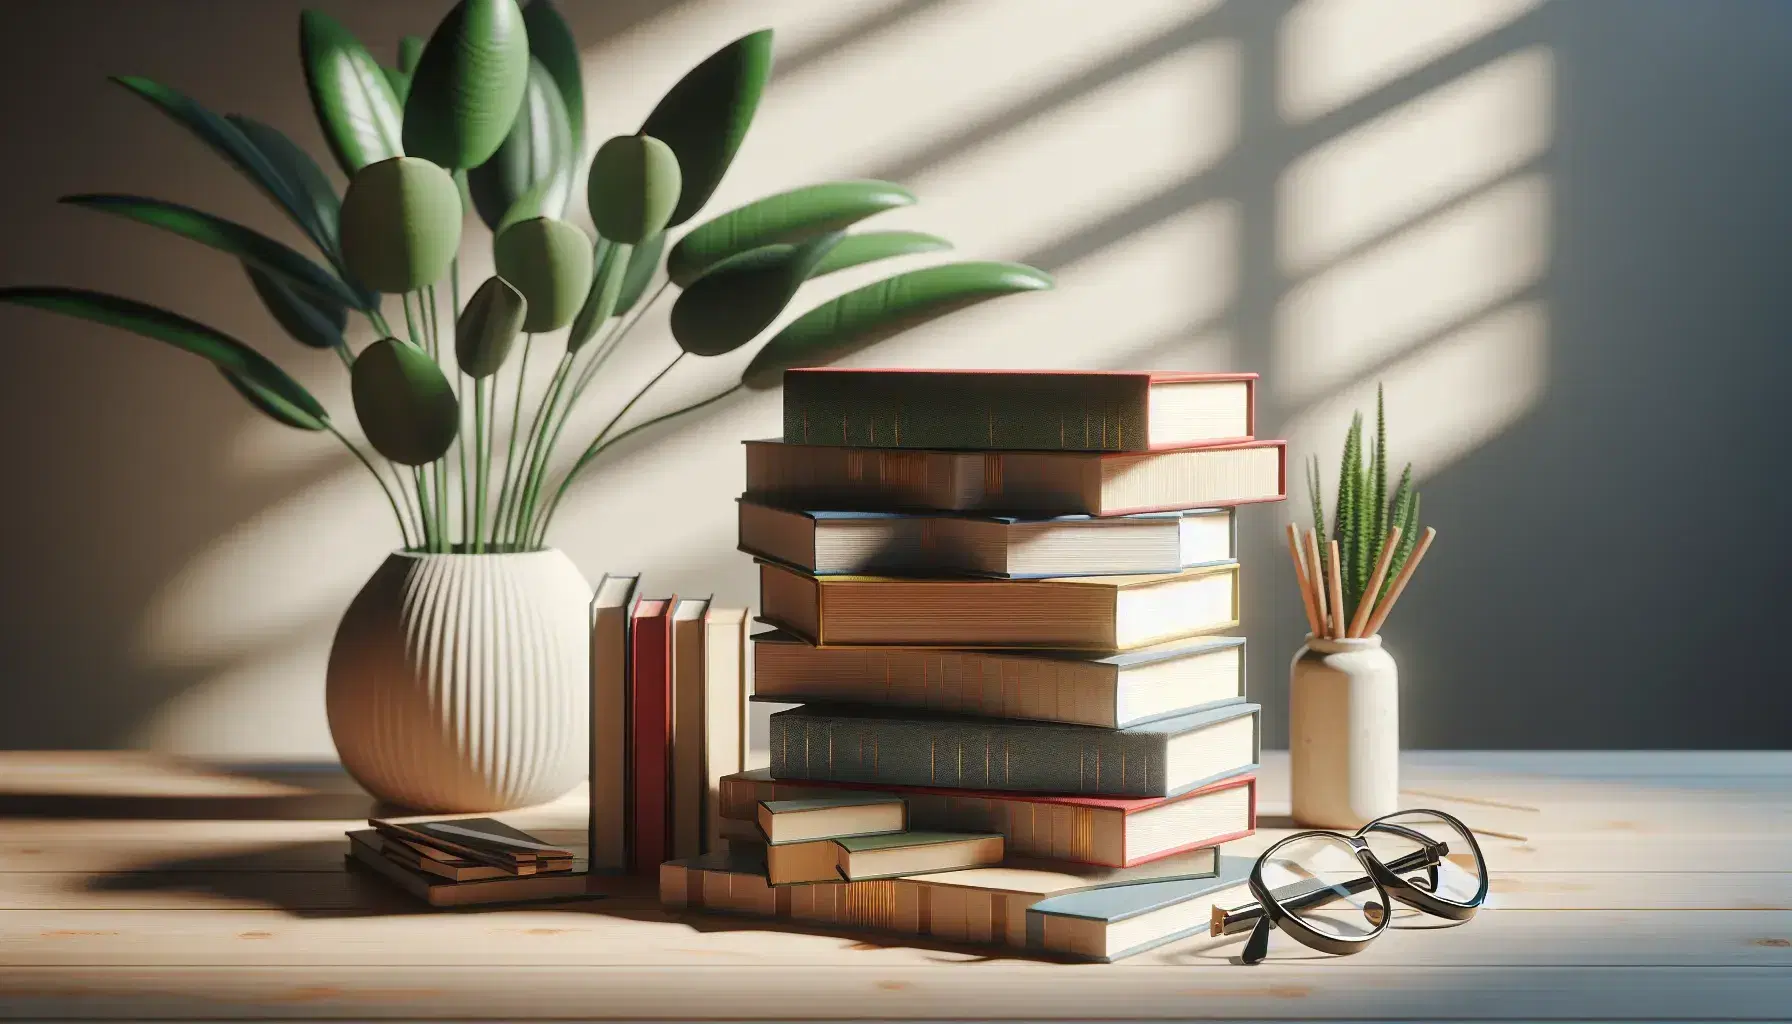 Pilas de libros de colores variados sobre mesa de madera clara con gafas negras y planta verde en maceta blanca al fondo.